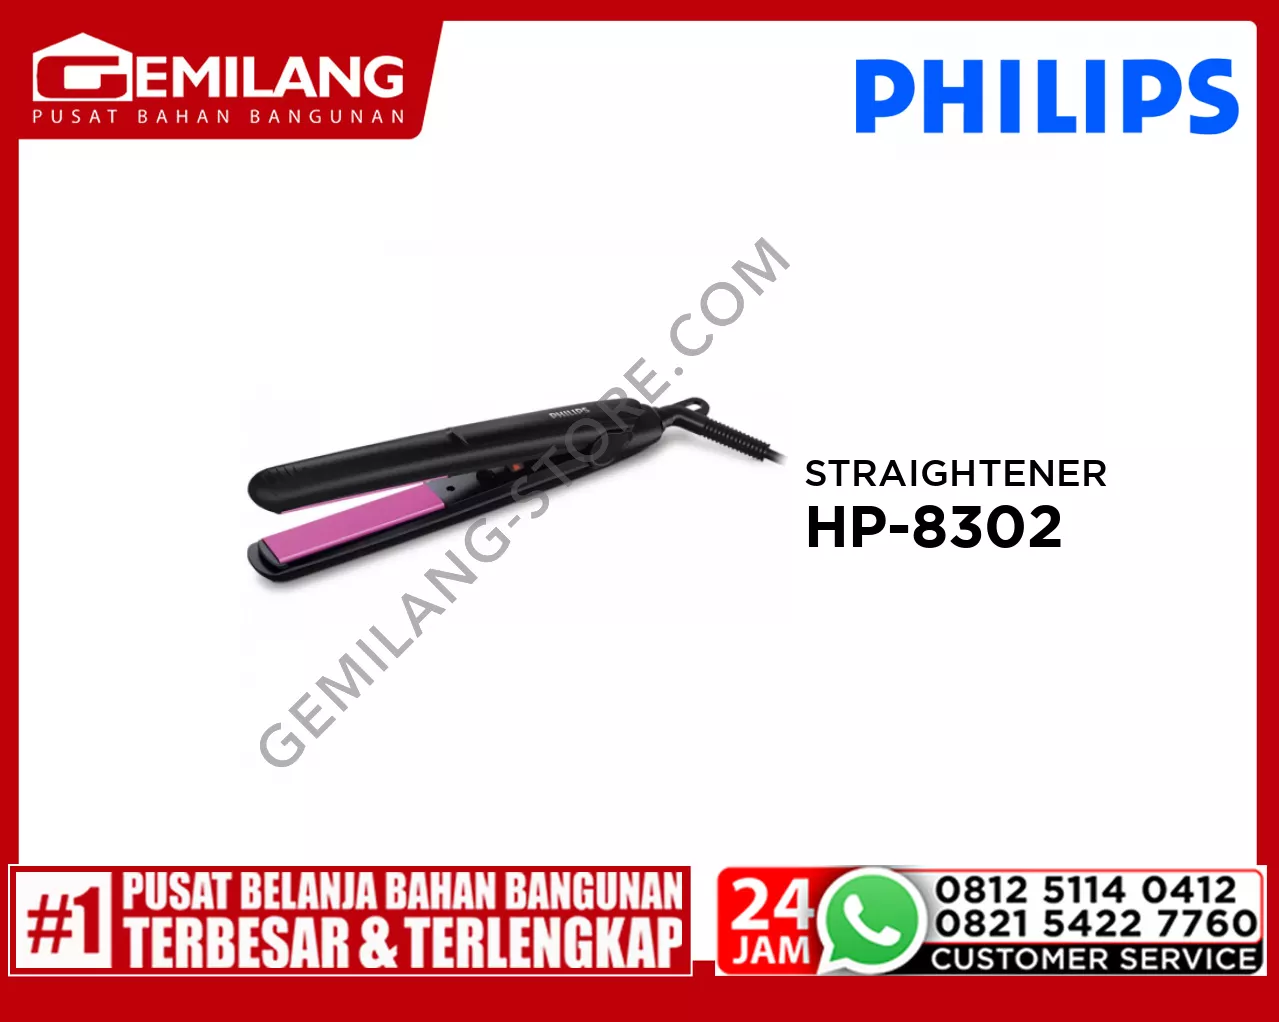 PHILIPS STRAIGHTENER HP-8302